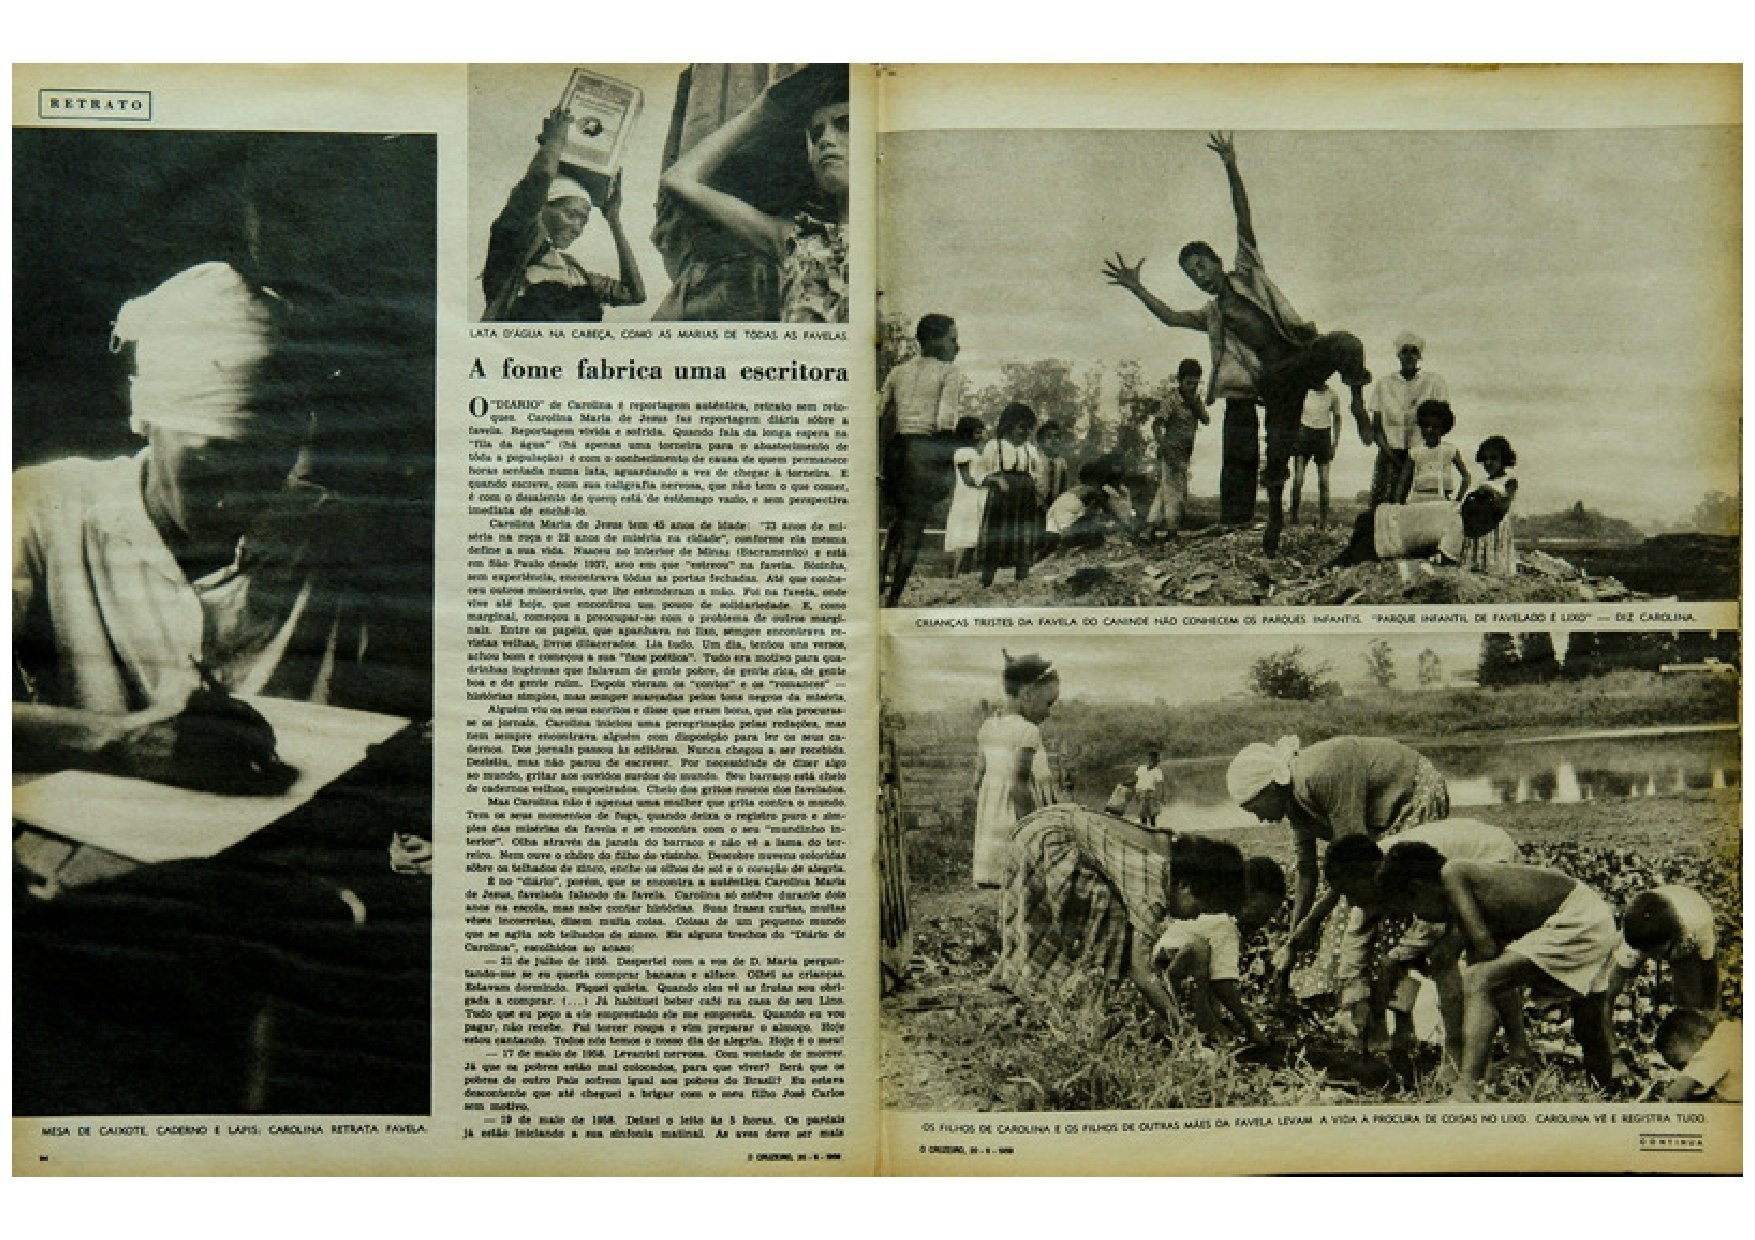 Revista O Cruzeiro: reportagem sobre Carolina Maria de Jesus, em 1959